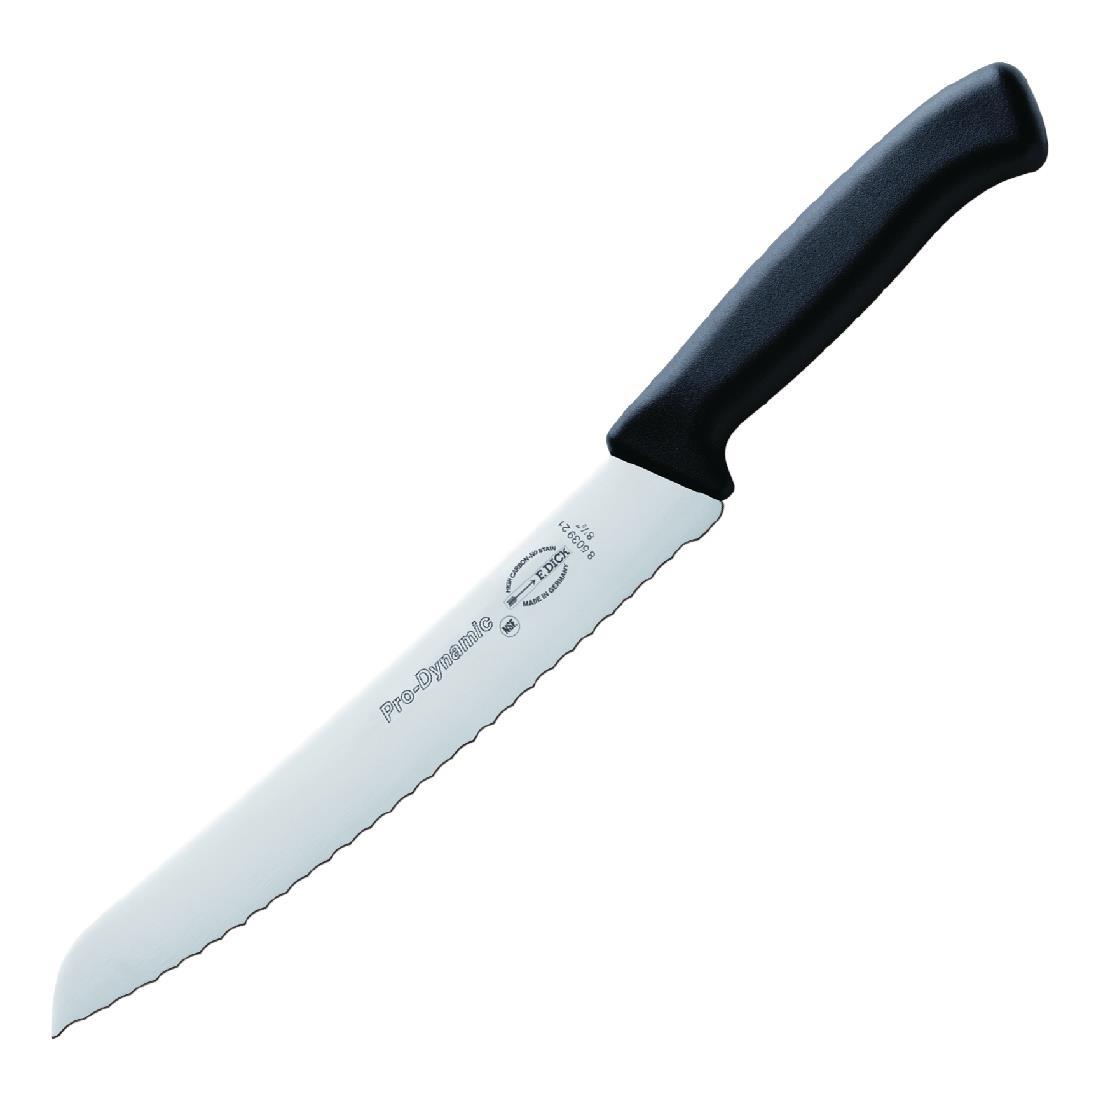 Dick Pro Dynamic Bread Knife 21.5cm - GD772  - 1